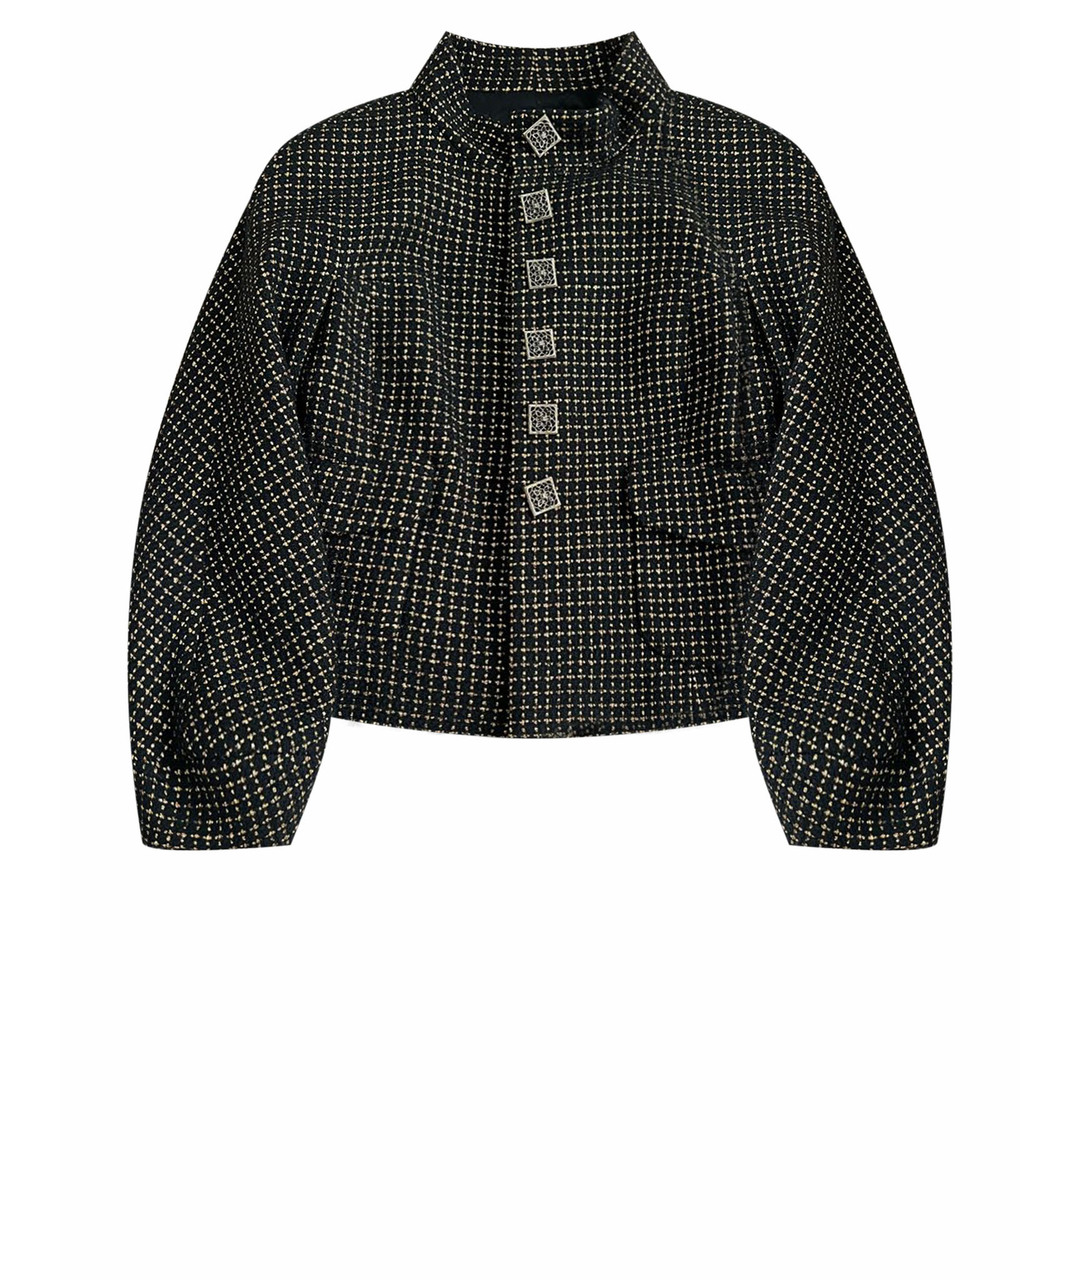 CHANEL PRE-OWNED Черный твидовый жакет/пиджак, фото 1